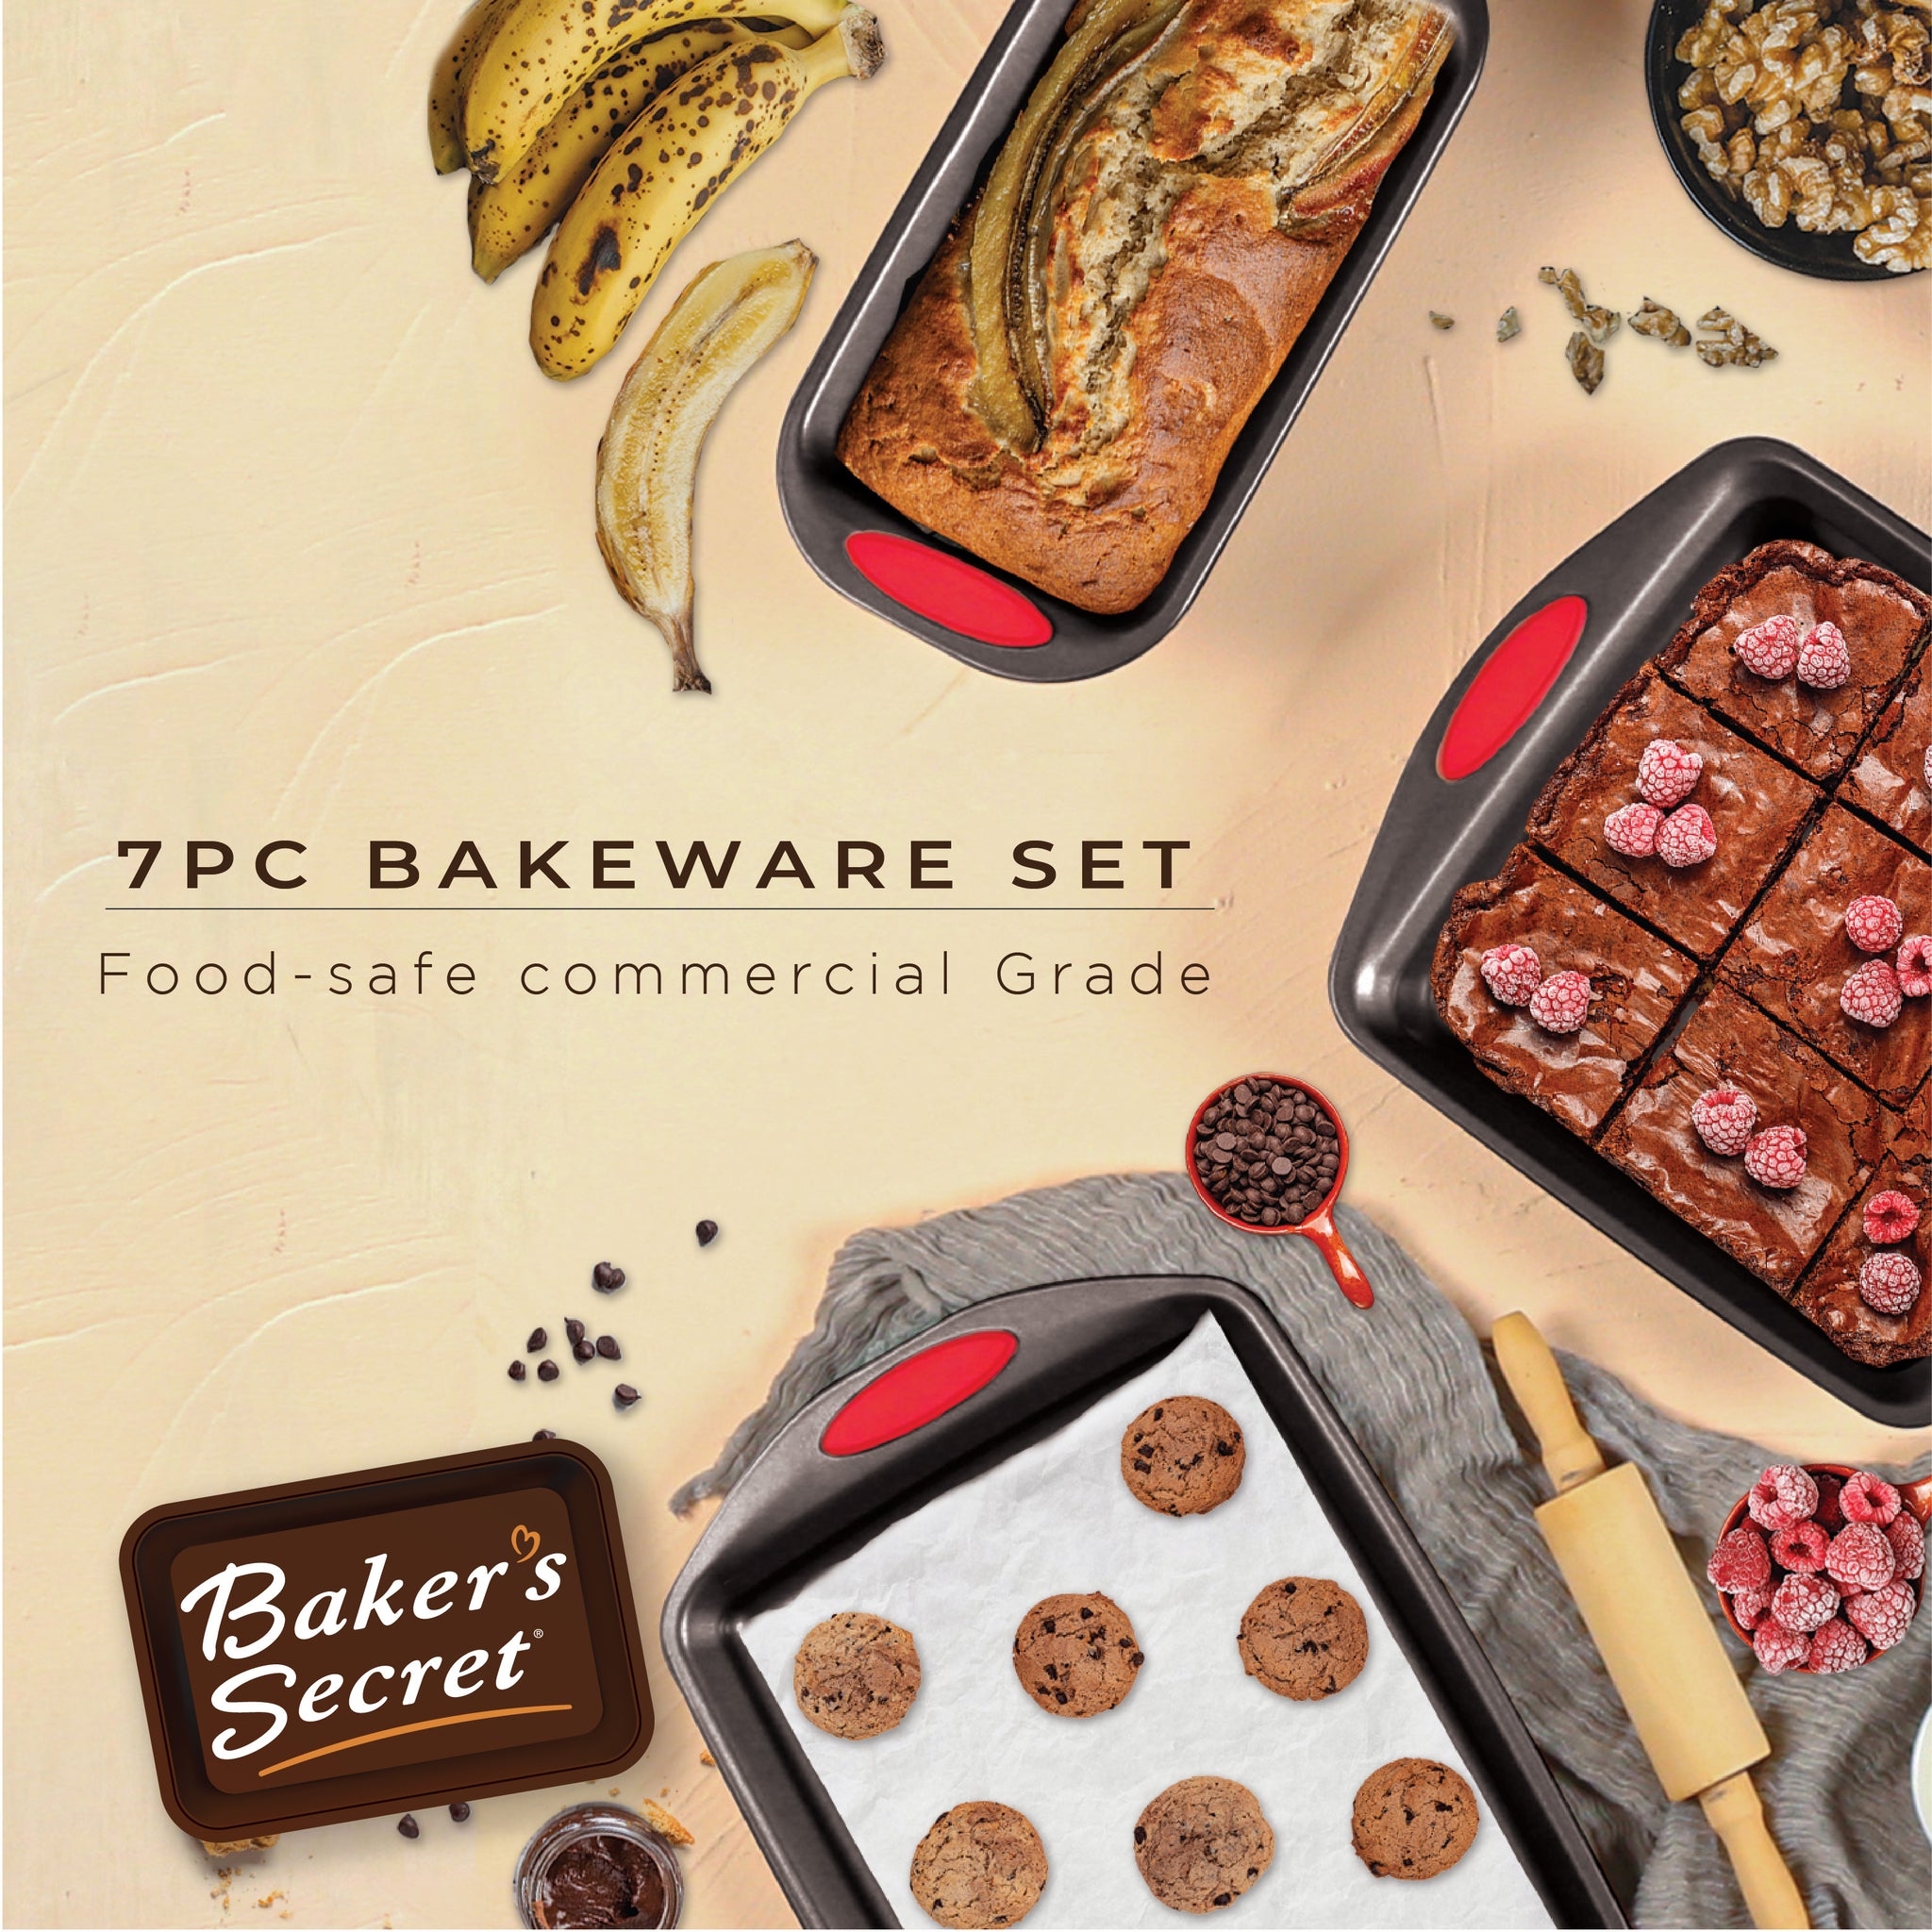 Baker's Secret Bakeware Sets - 8 Pieces Baking Pans Set with Grip